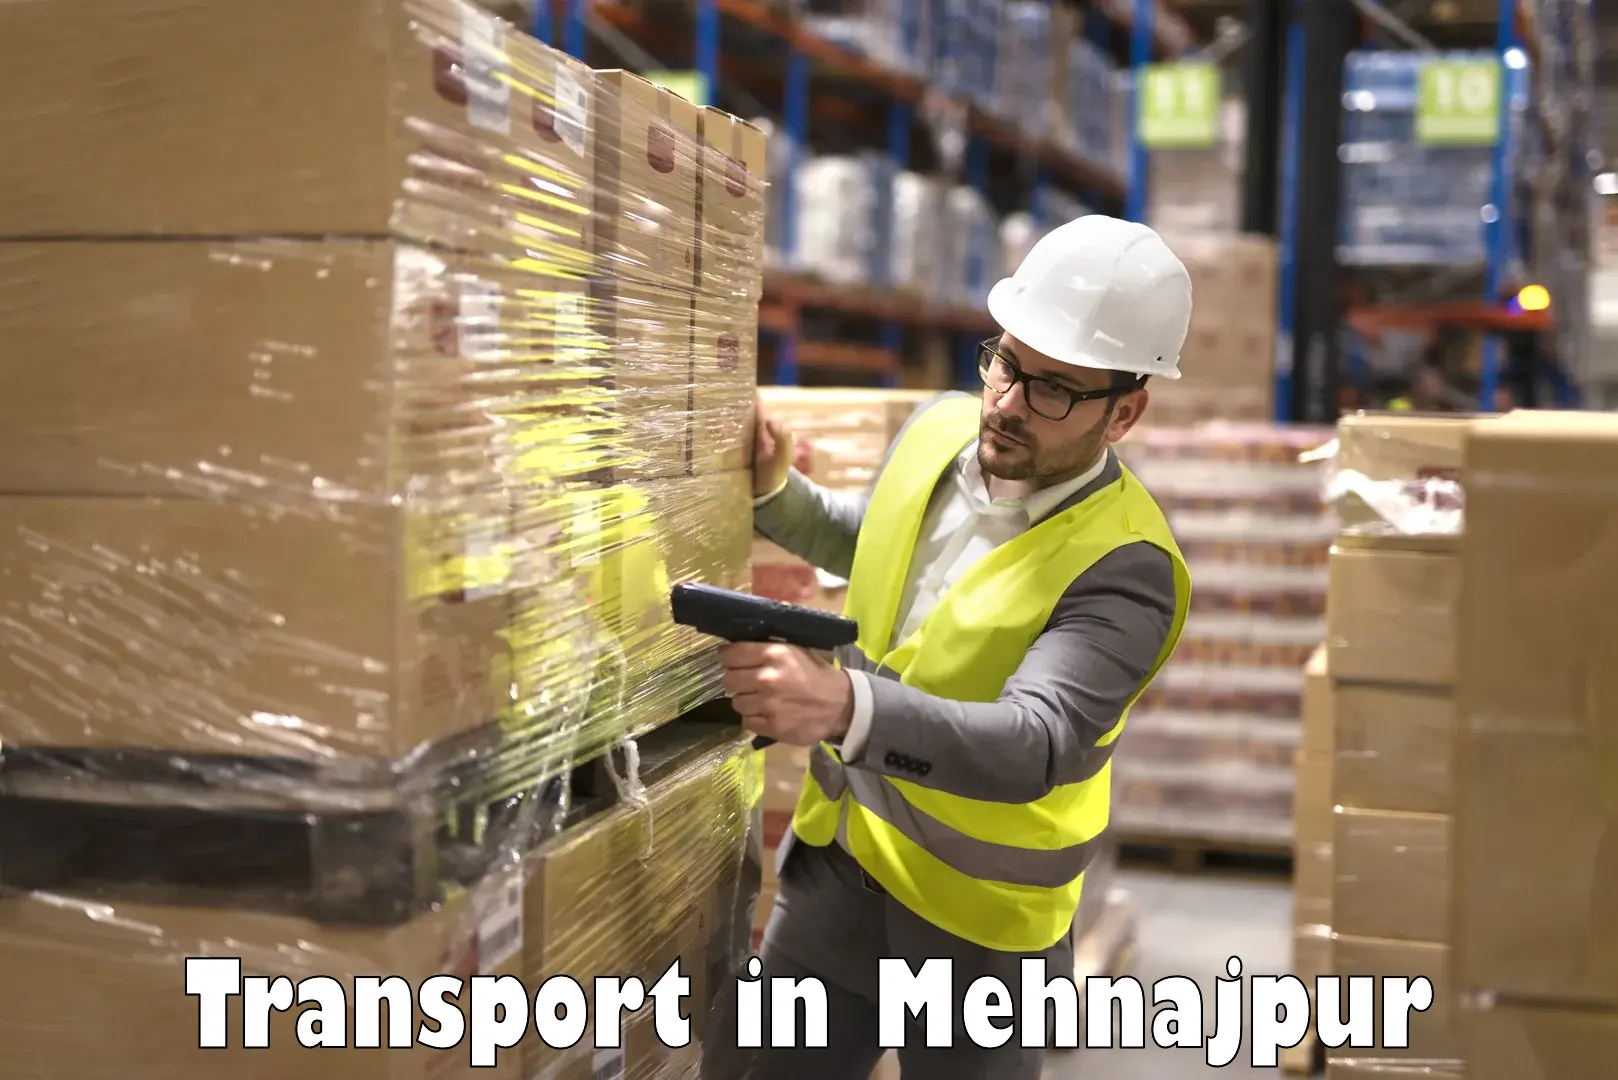 Interstate transport services in Mehnajpur